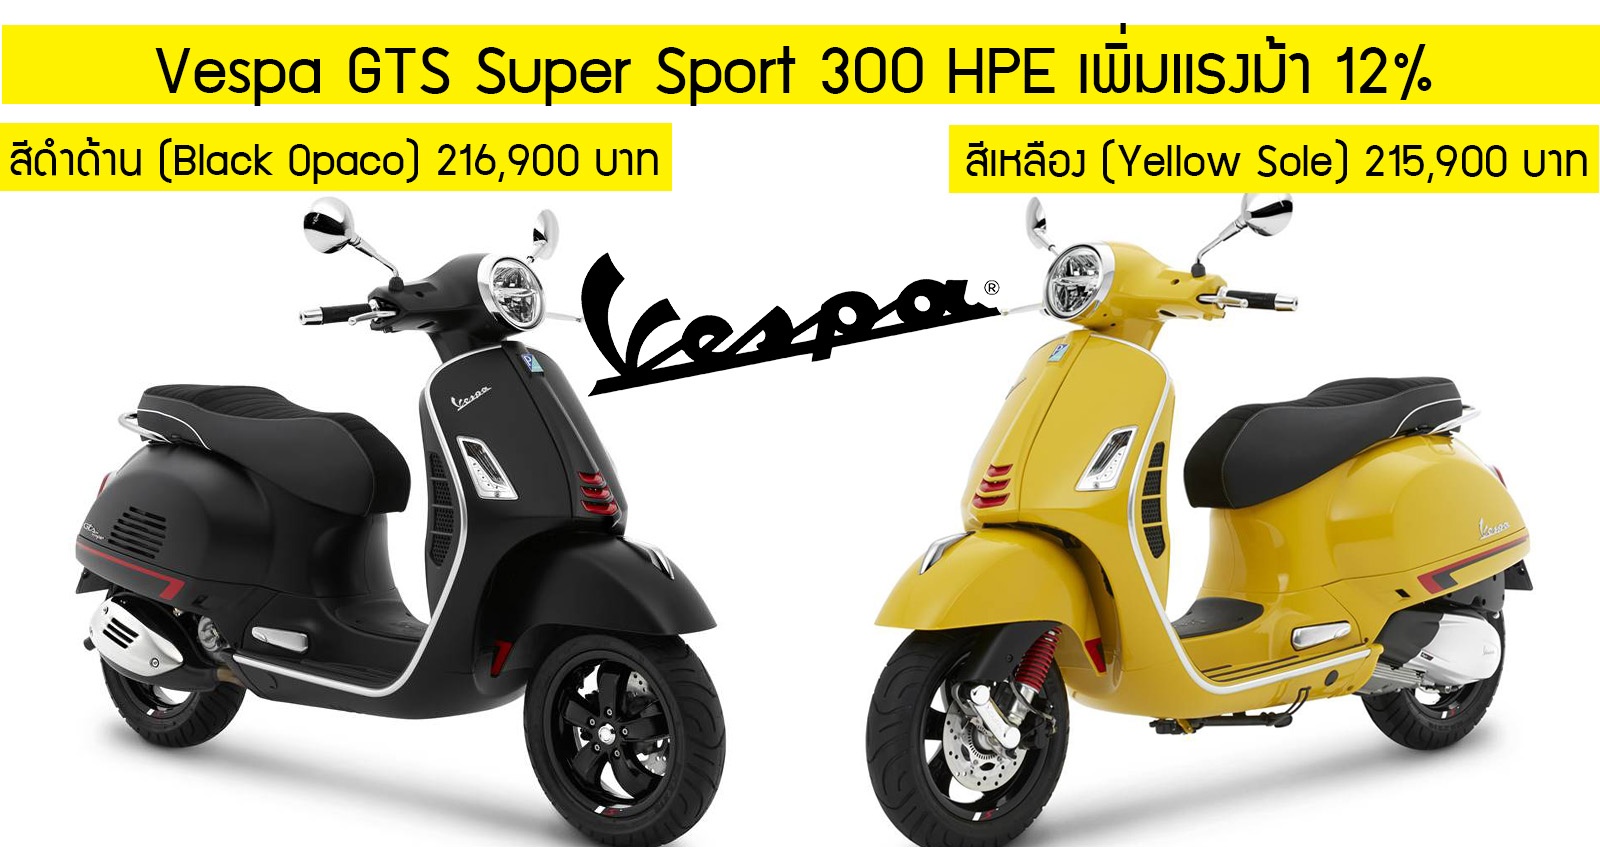 Vespa GTS Super Sport 300 HPE เพิ่มแรงม้า 12% ราคา 215,900 บาท